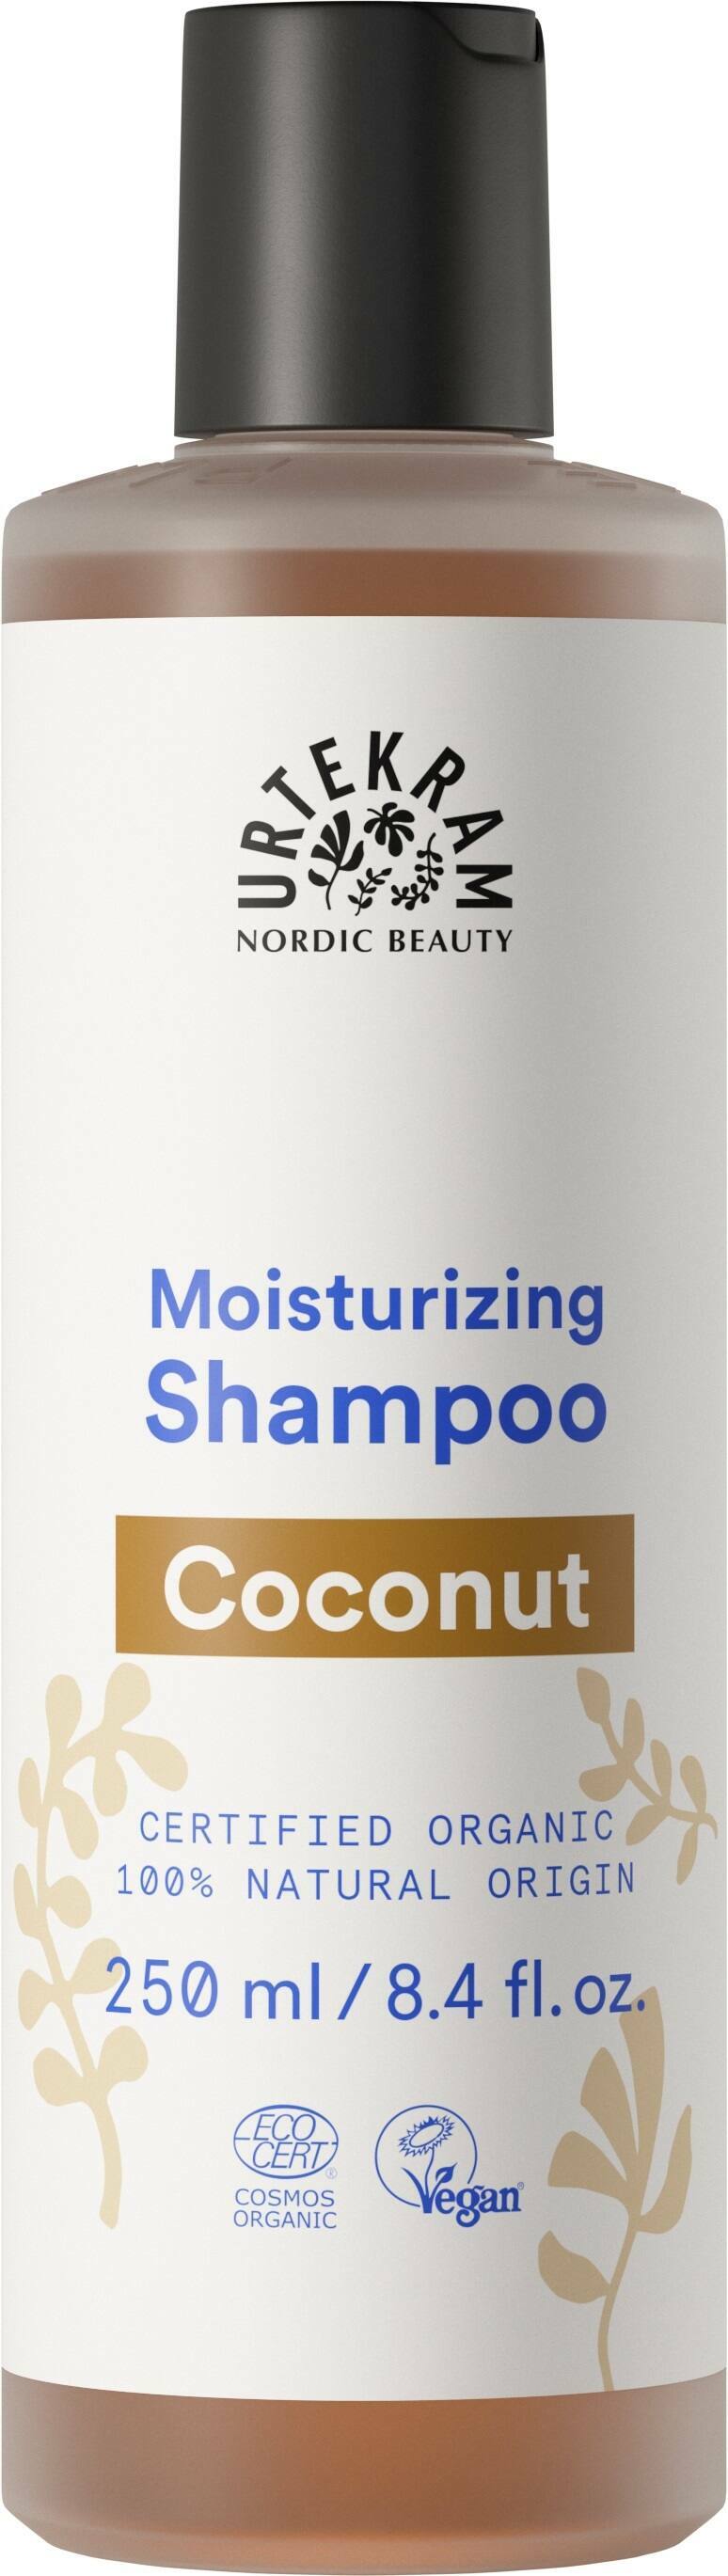 Urtekram Organic Coconut Shampoo for Normal Hair 250ml